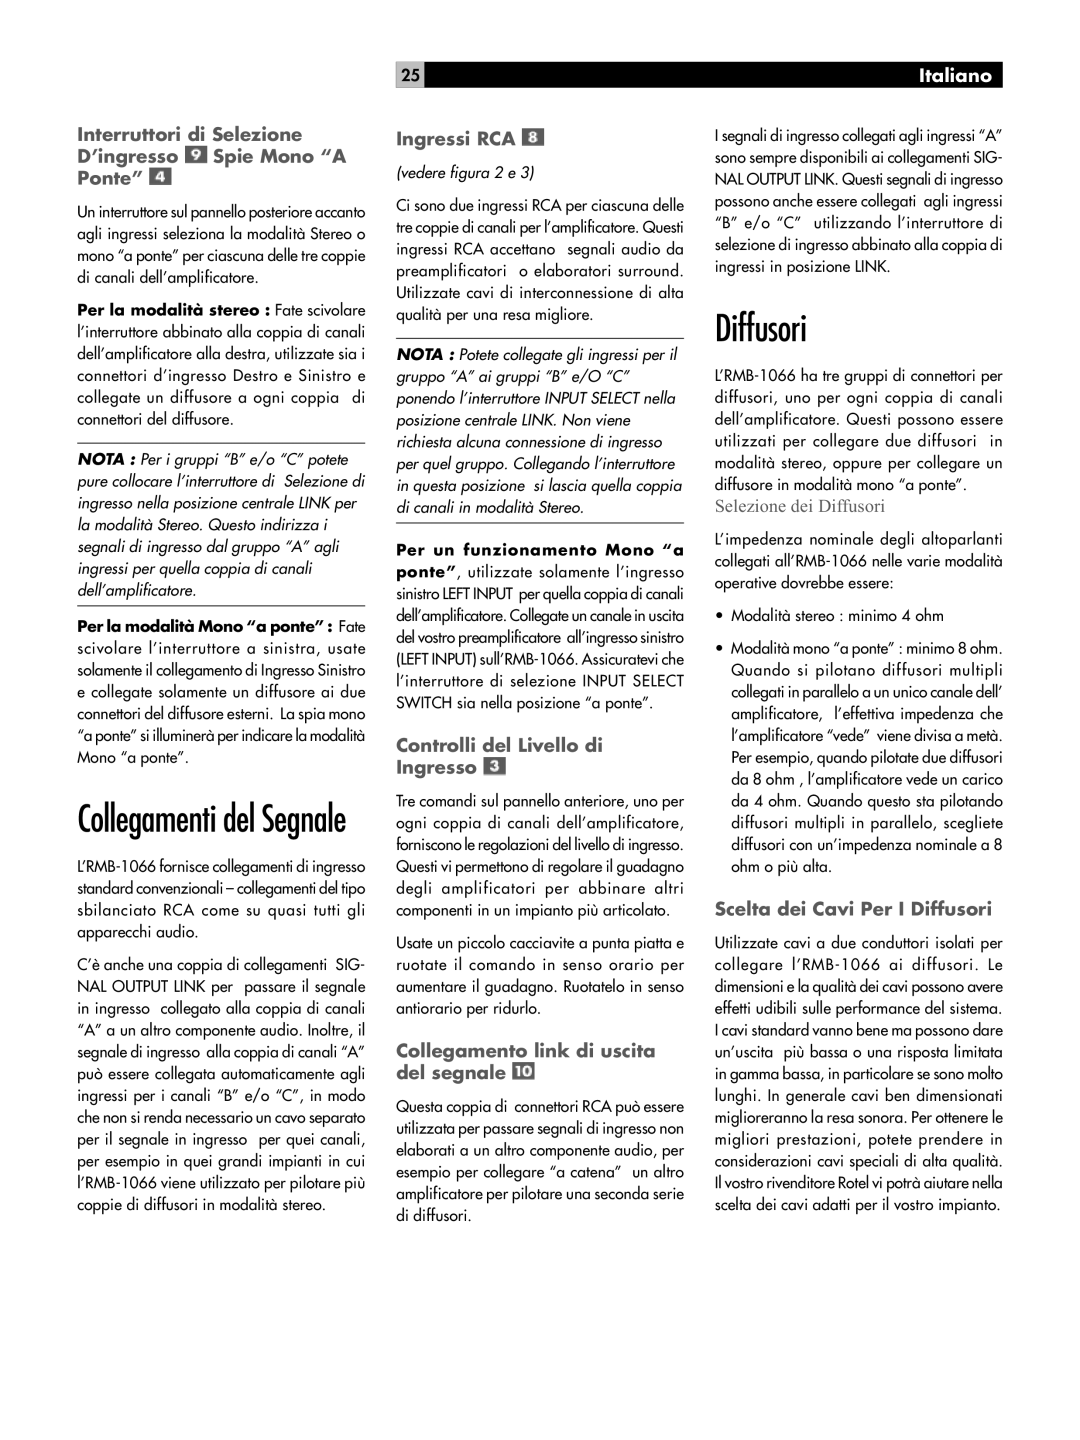 Rotel RB-1066 owner manual Diffusori, Collegamenti del Segnale, Ingressi RCA, Controlli del Livello di Ingresso, Italiano 